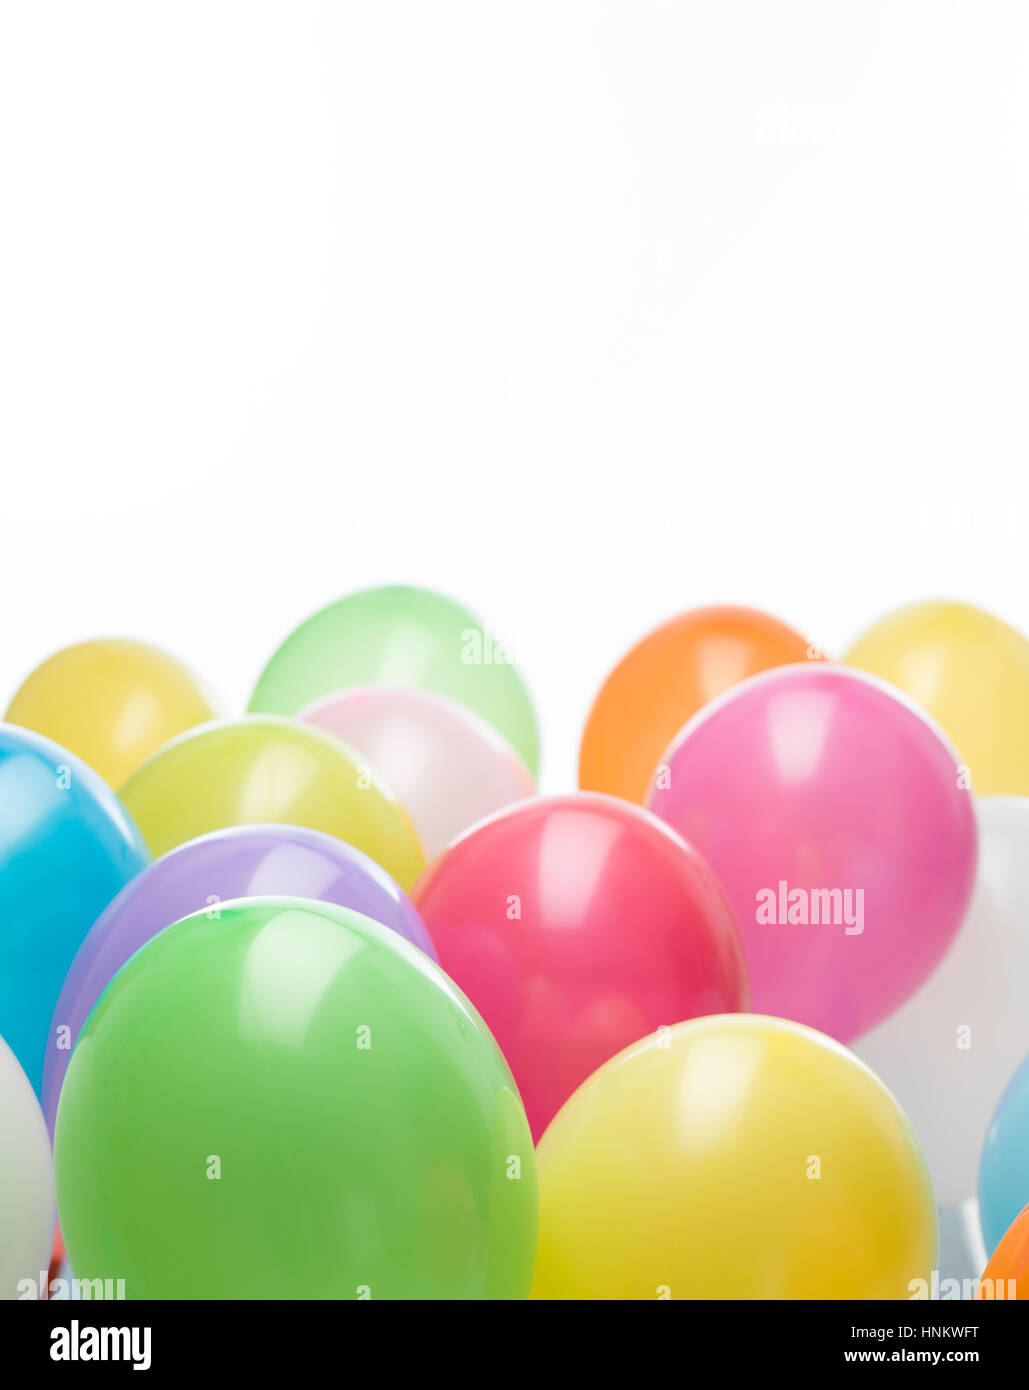 Gruppe von bunten Luftballons im unteren Teil des Bildes Stockfoto